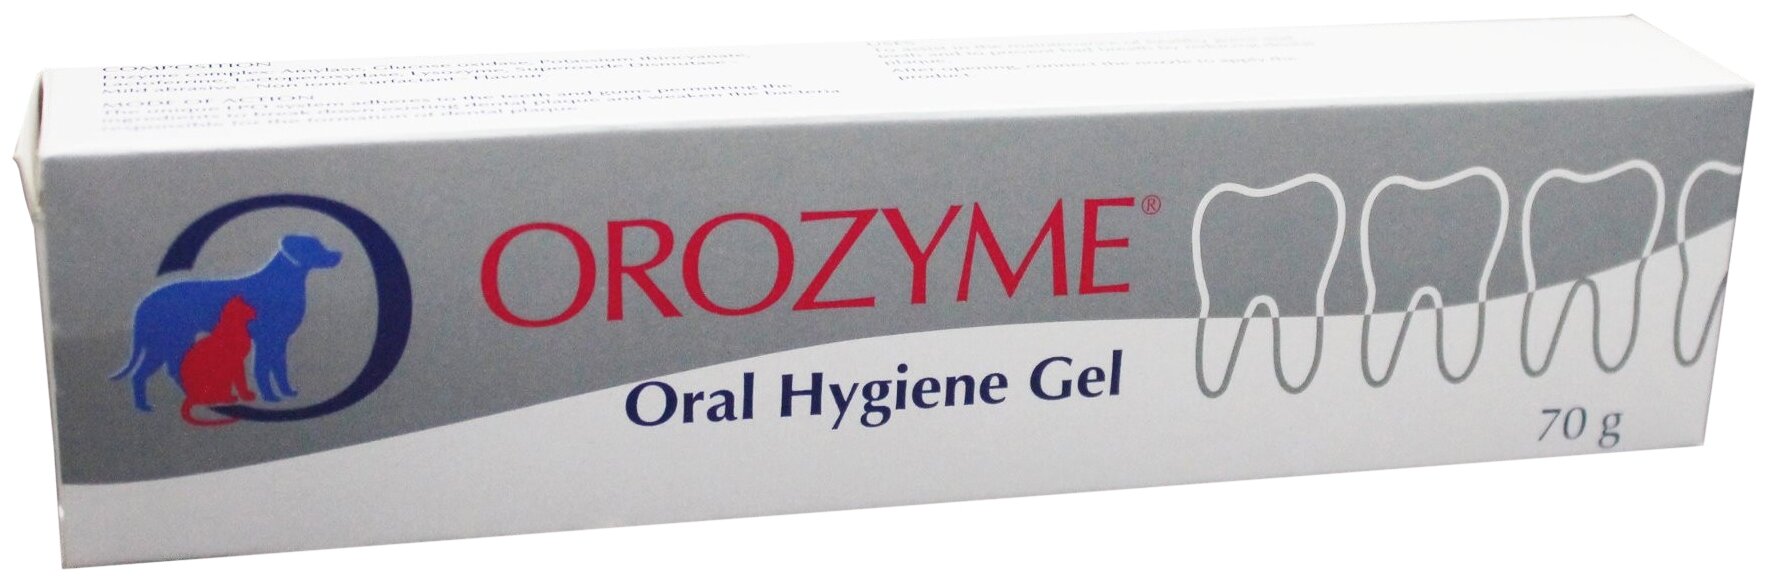 Зубная паста ECUPHAR Orozyme для зубов